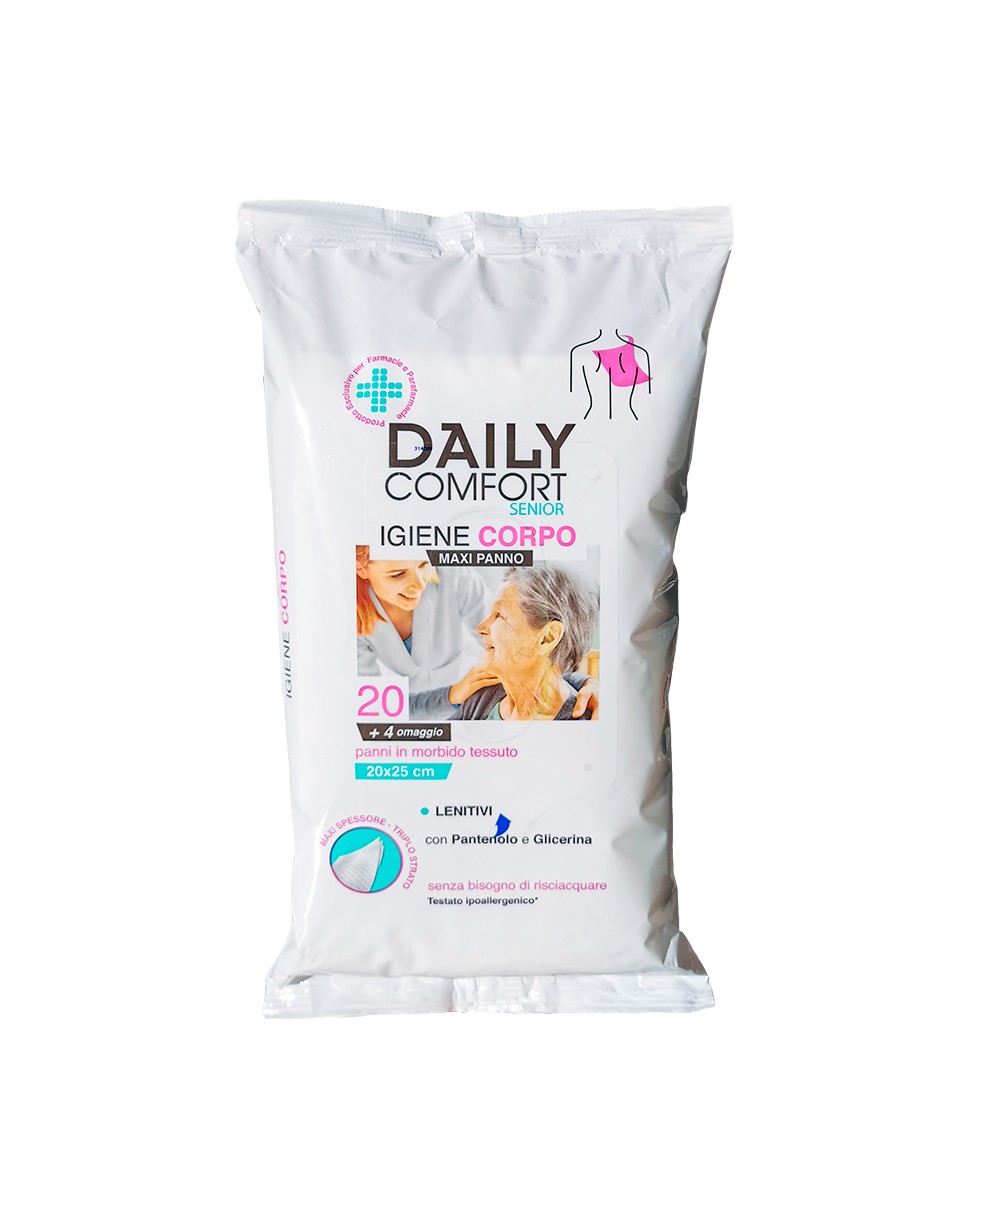 Daily Comfort Senior Igiene Corpo 20 + 4 Omaggio - Panno per Igiene Corpo 20x25 cm